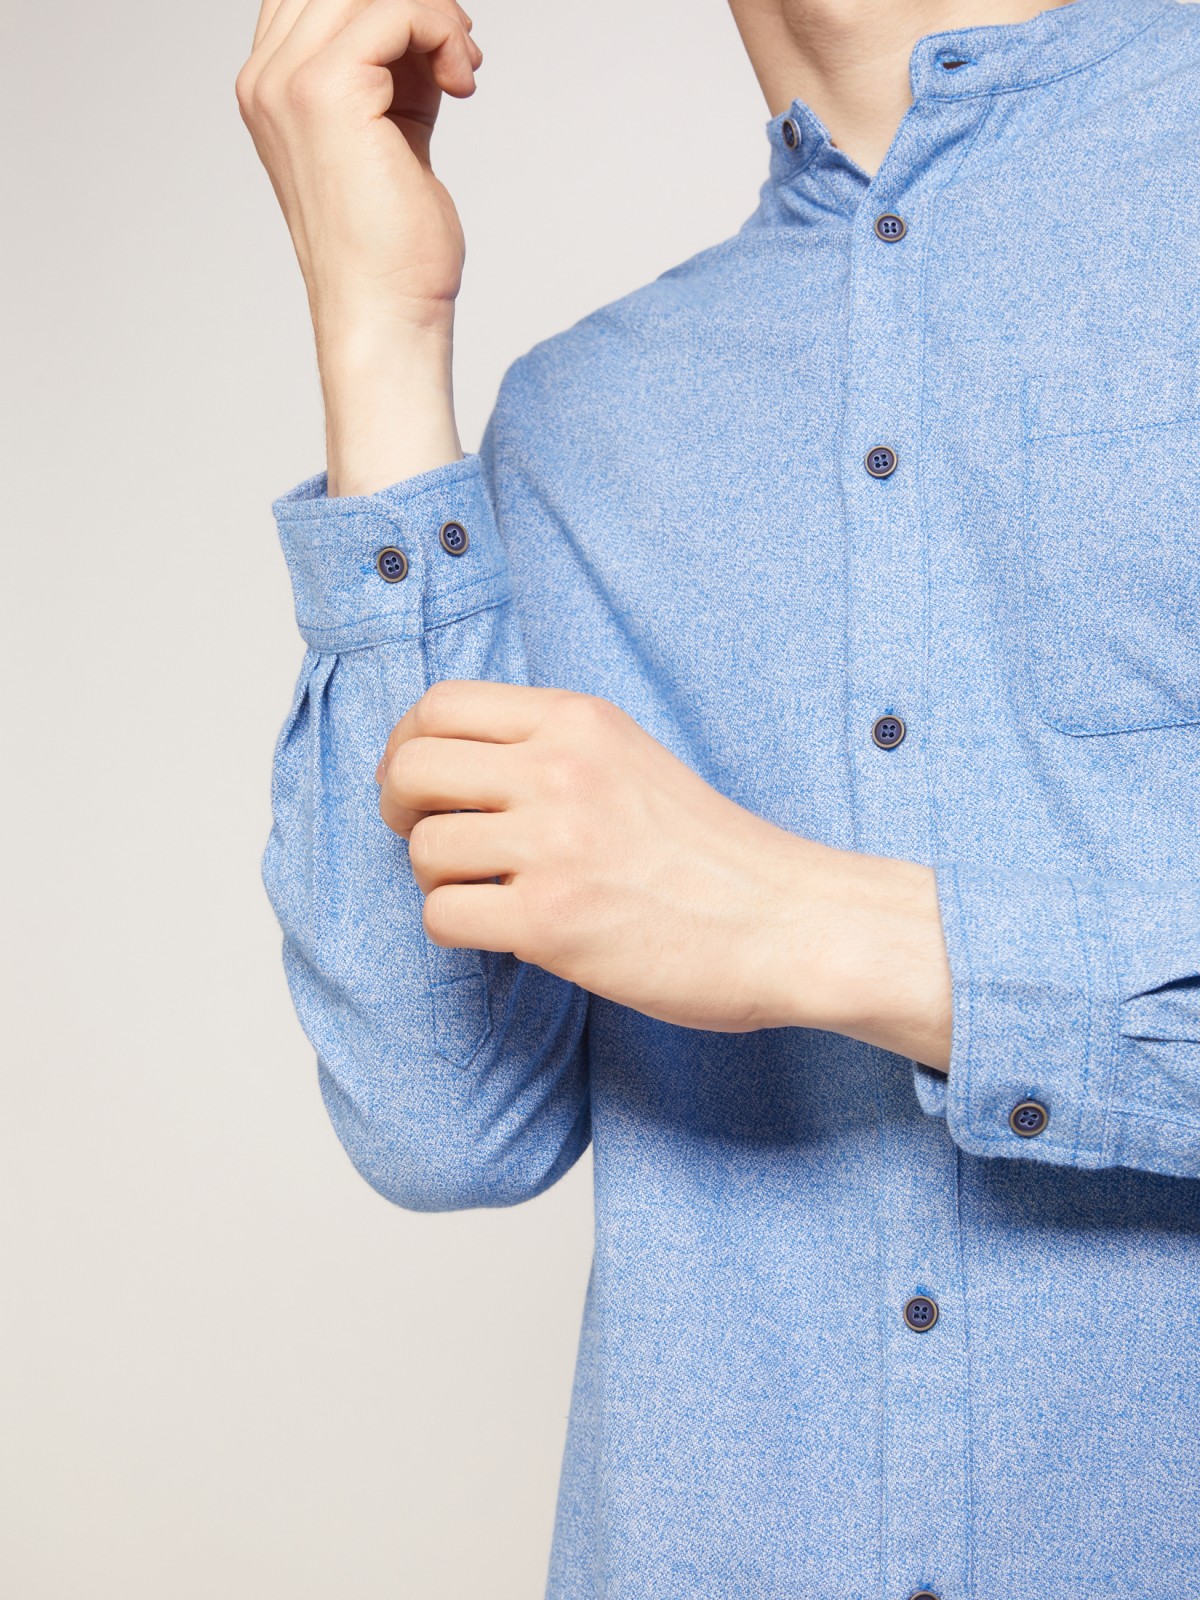 Фланелевая рубашка с воротником-стойкой zolla 211342191021, цвет голубой, размер S - фото 5